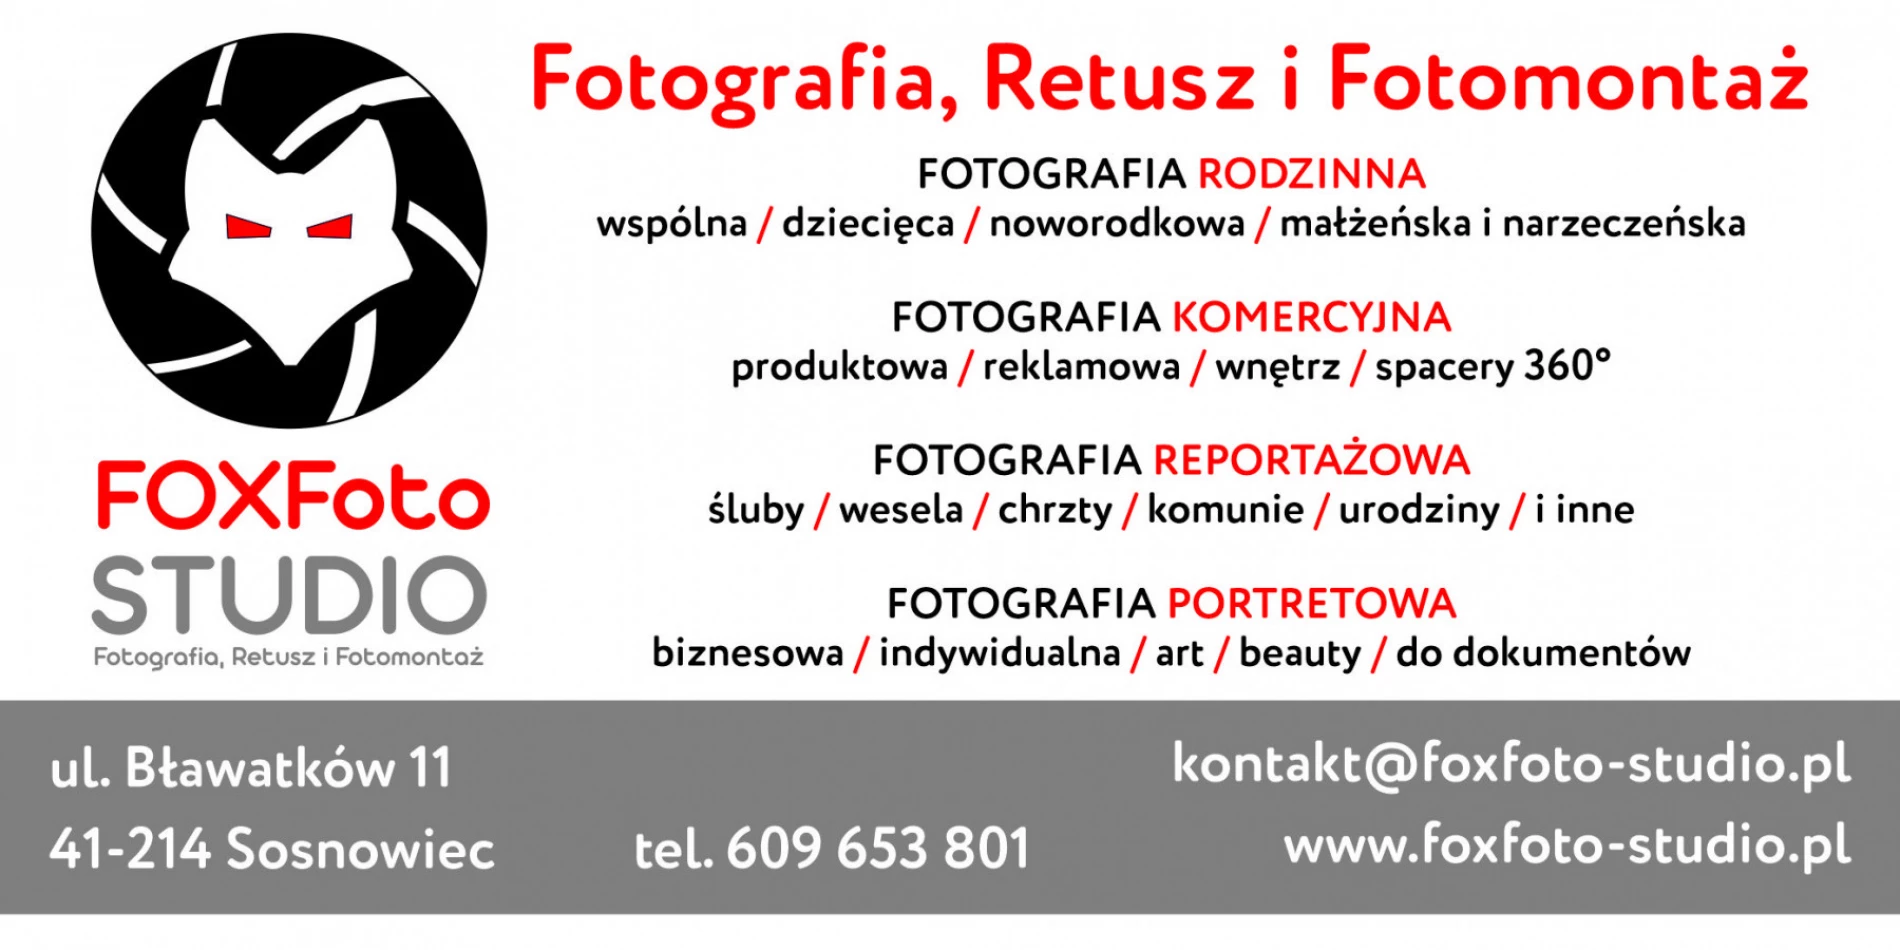 portfolio zdjecia znany fotograf foxfoto-studio